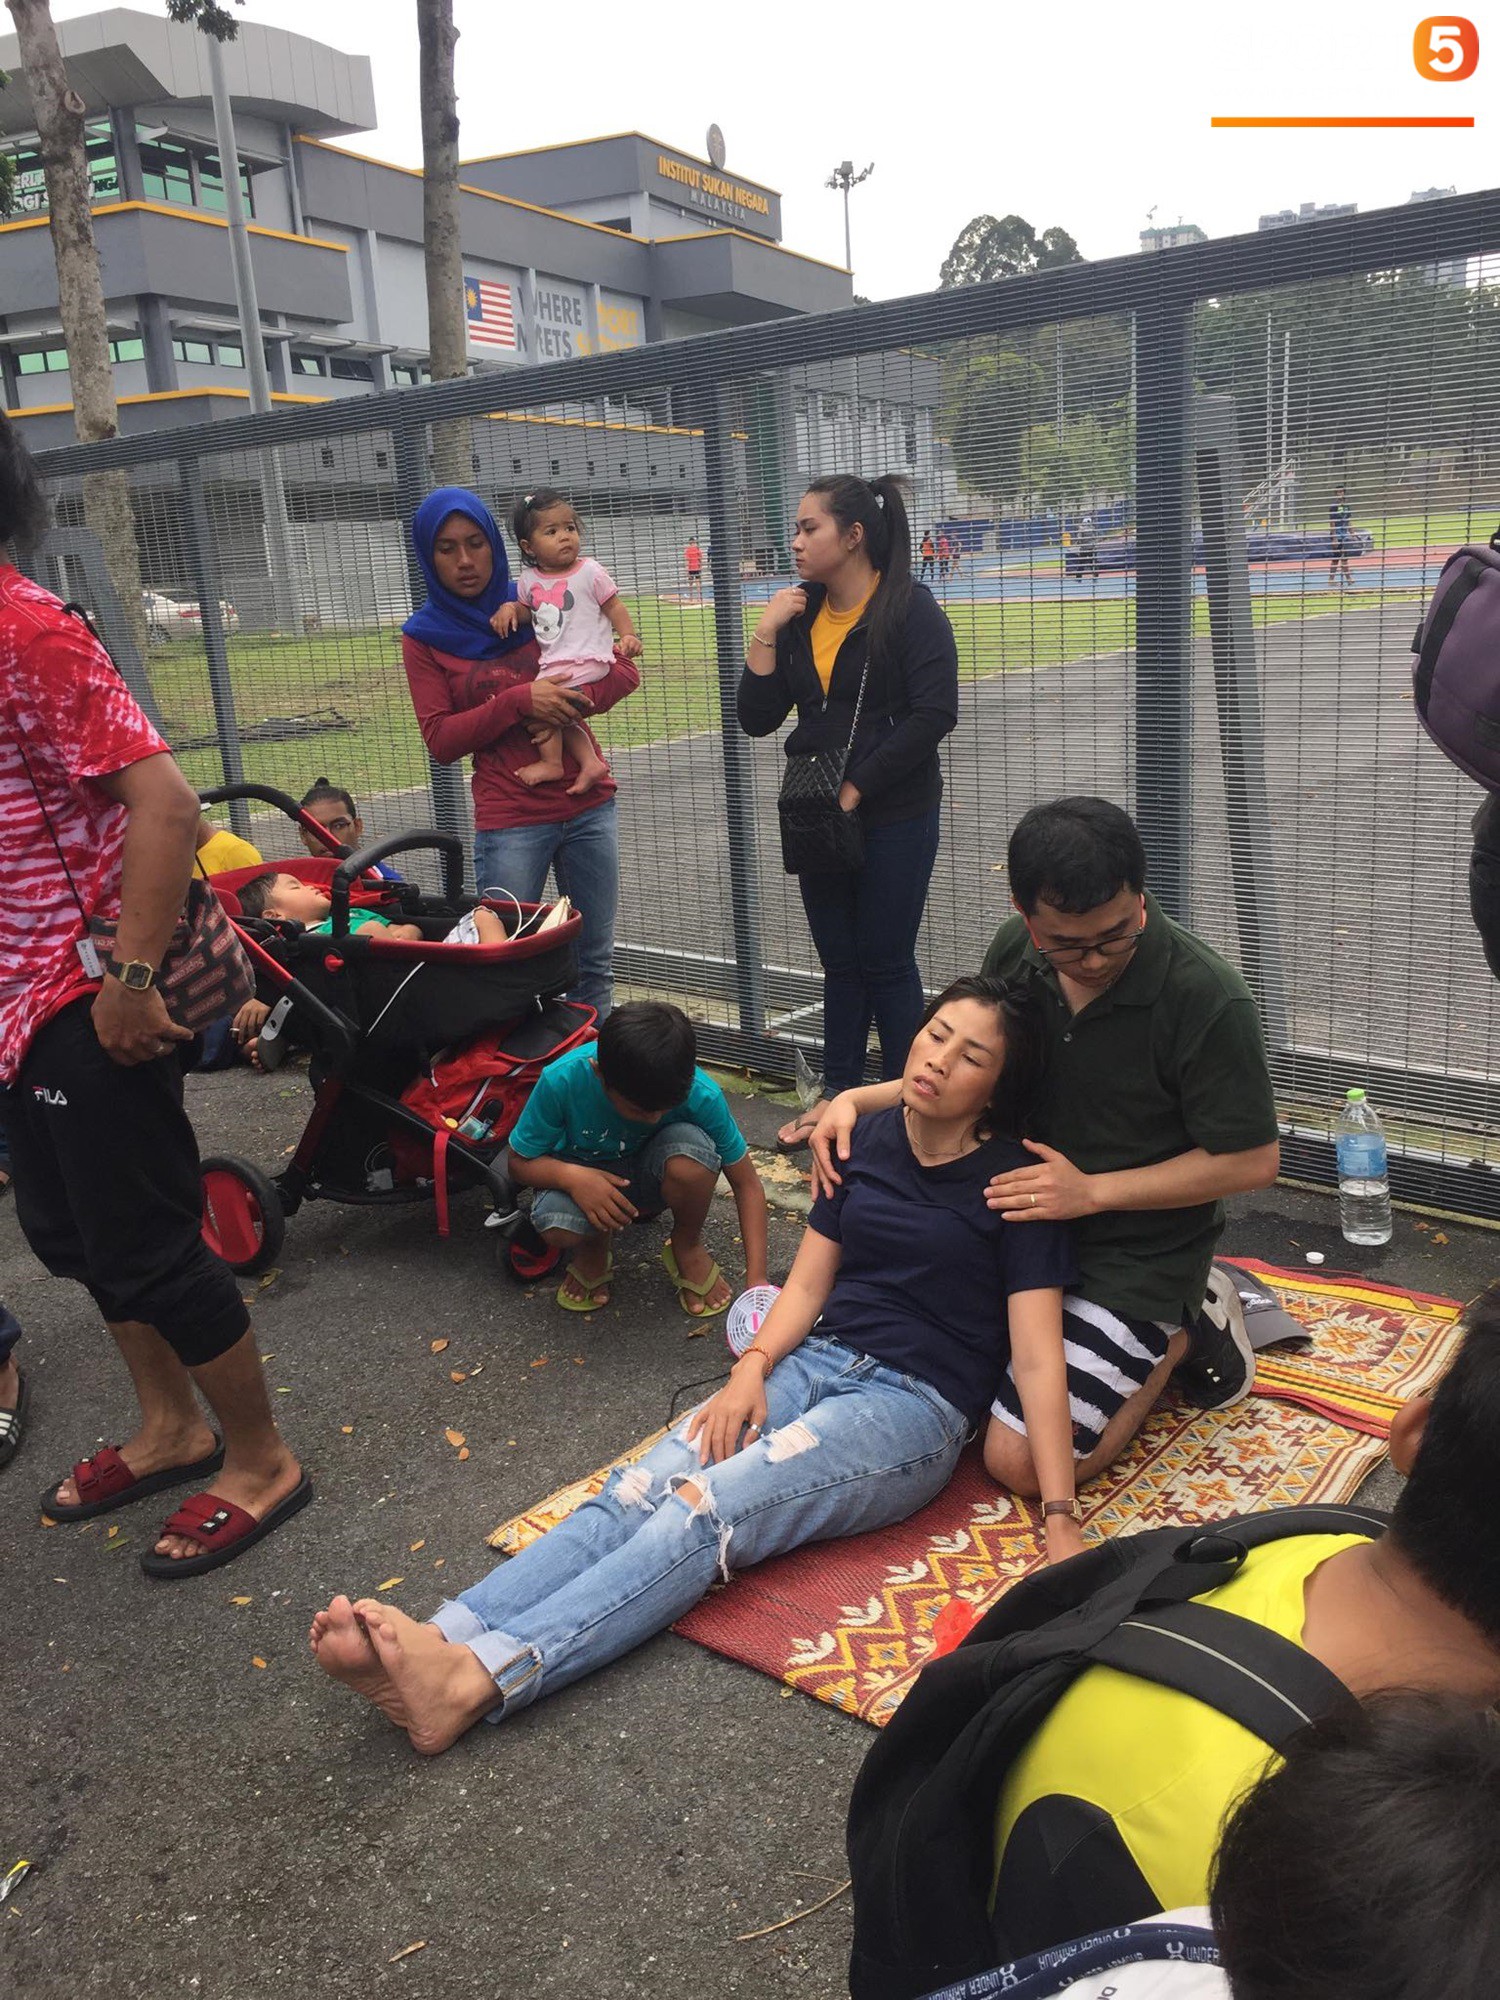 Kinh hoàng cảnh mua vé xem chung kết AFF Cup tại Malaysia: Nhiều người kiệt sức, nằm la liệt bên đường - Ảnh 3.